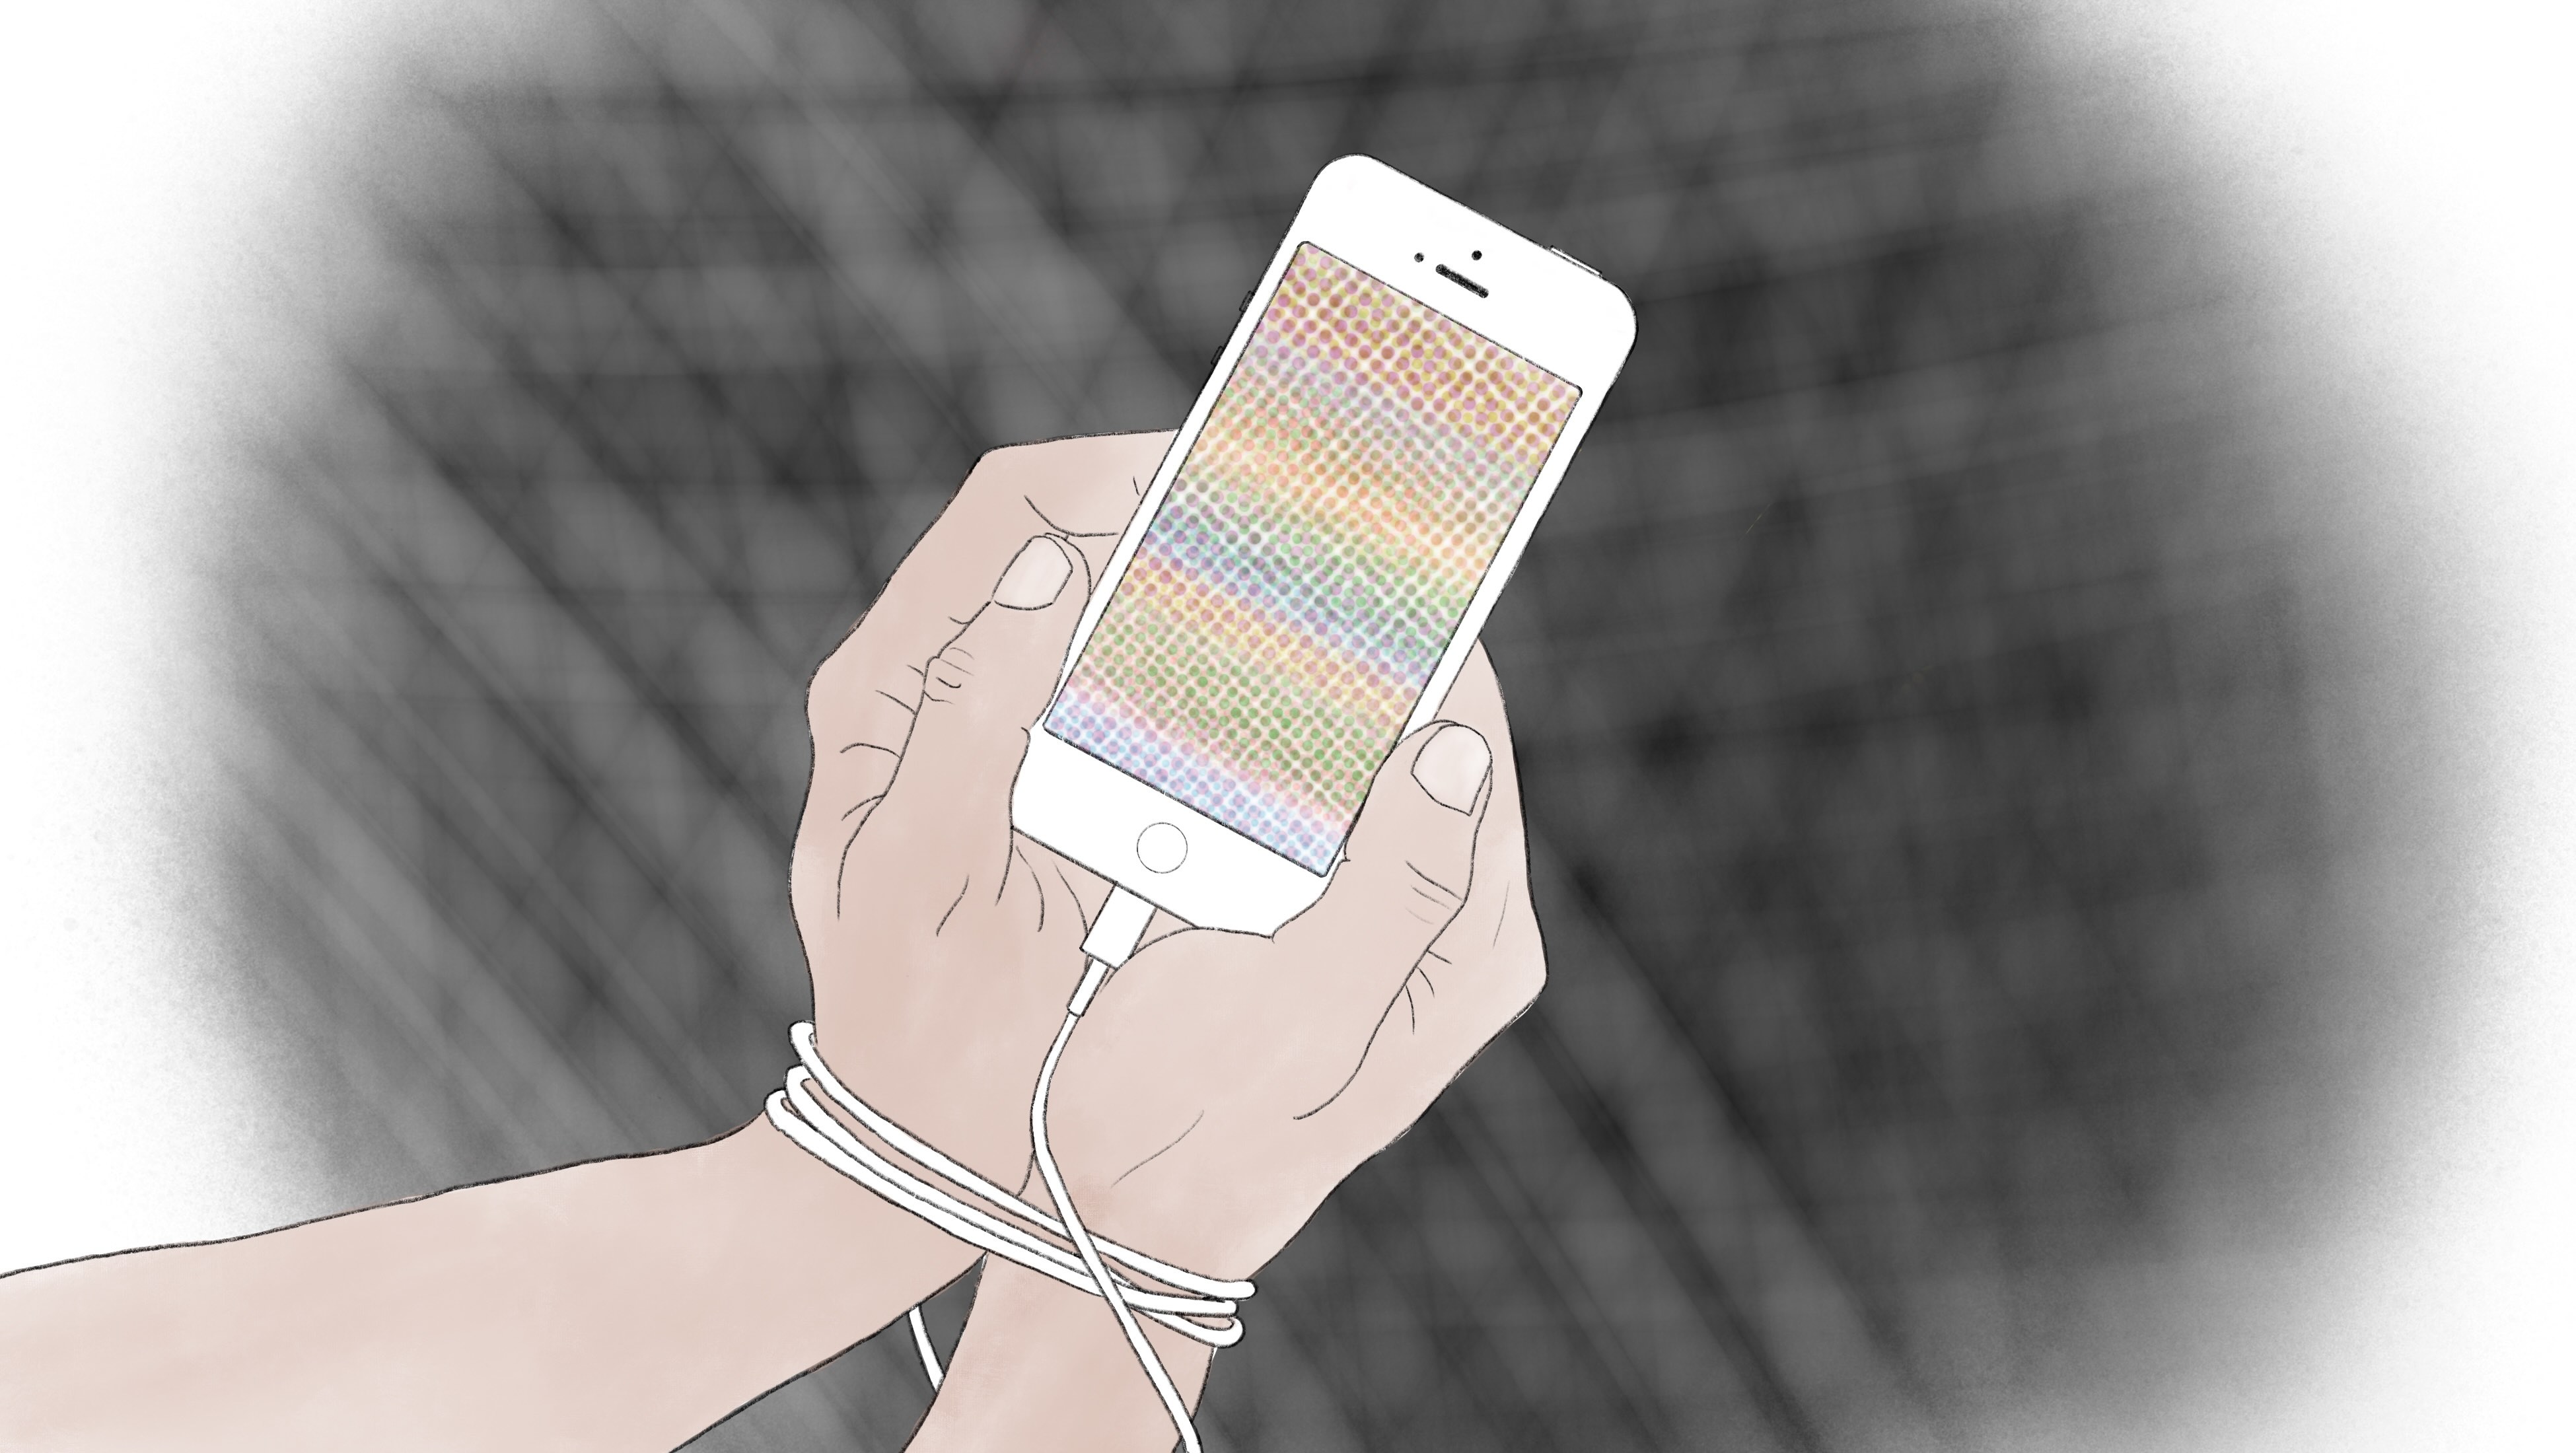 Die Illustration zeigt 2 Hände, die gebunden und gefangen sind von den Kopfhörerkabel. Die Hände halten ein Handy.